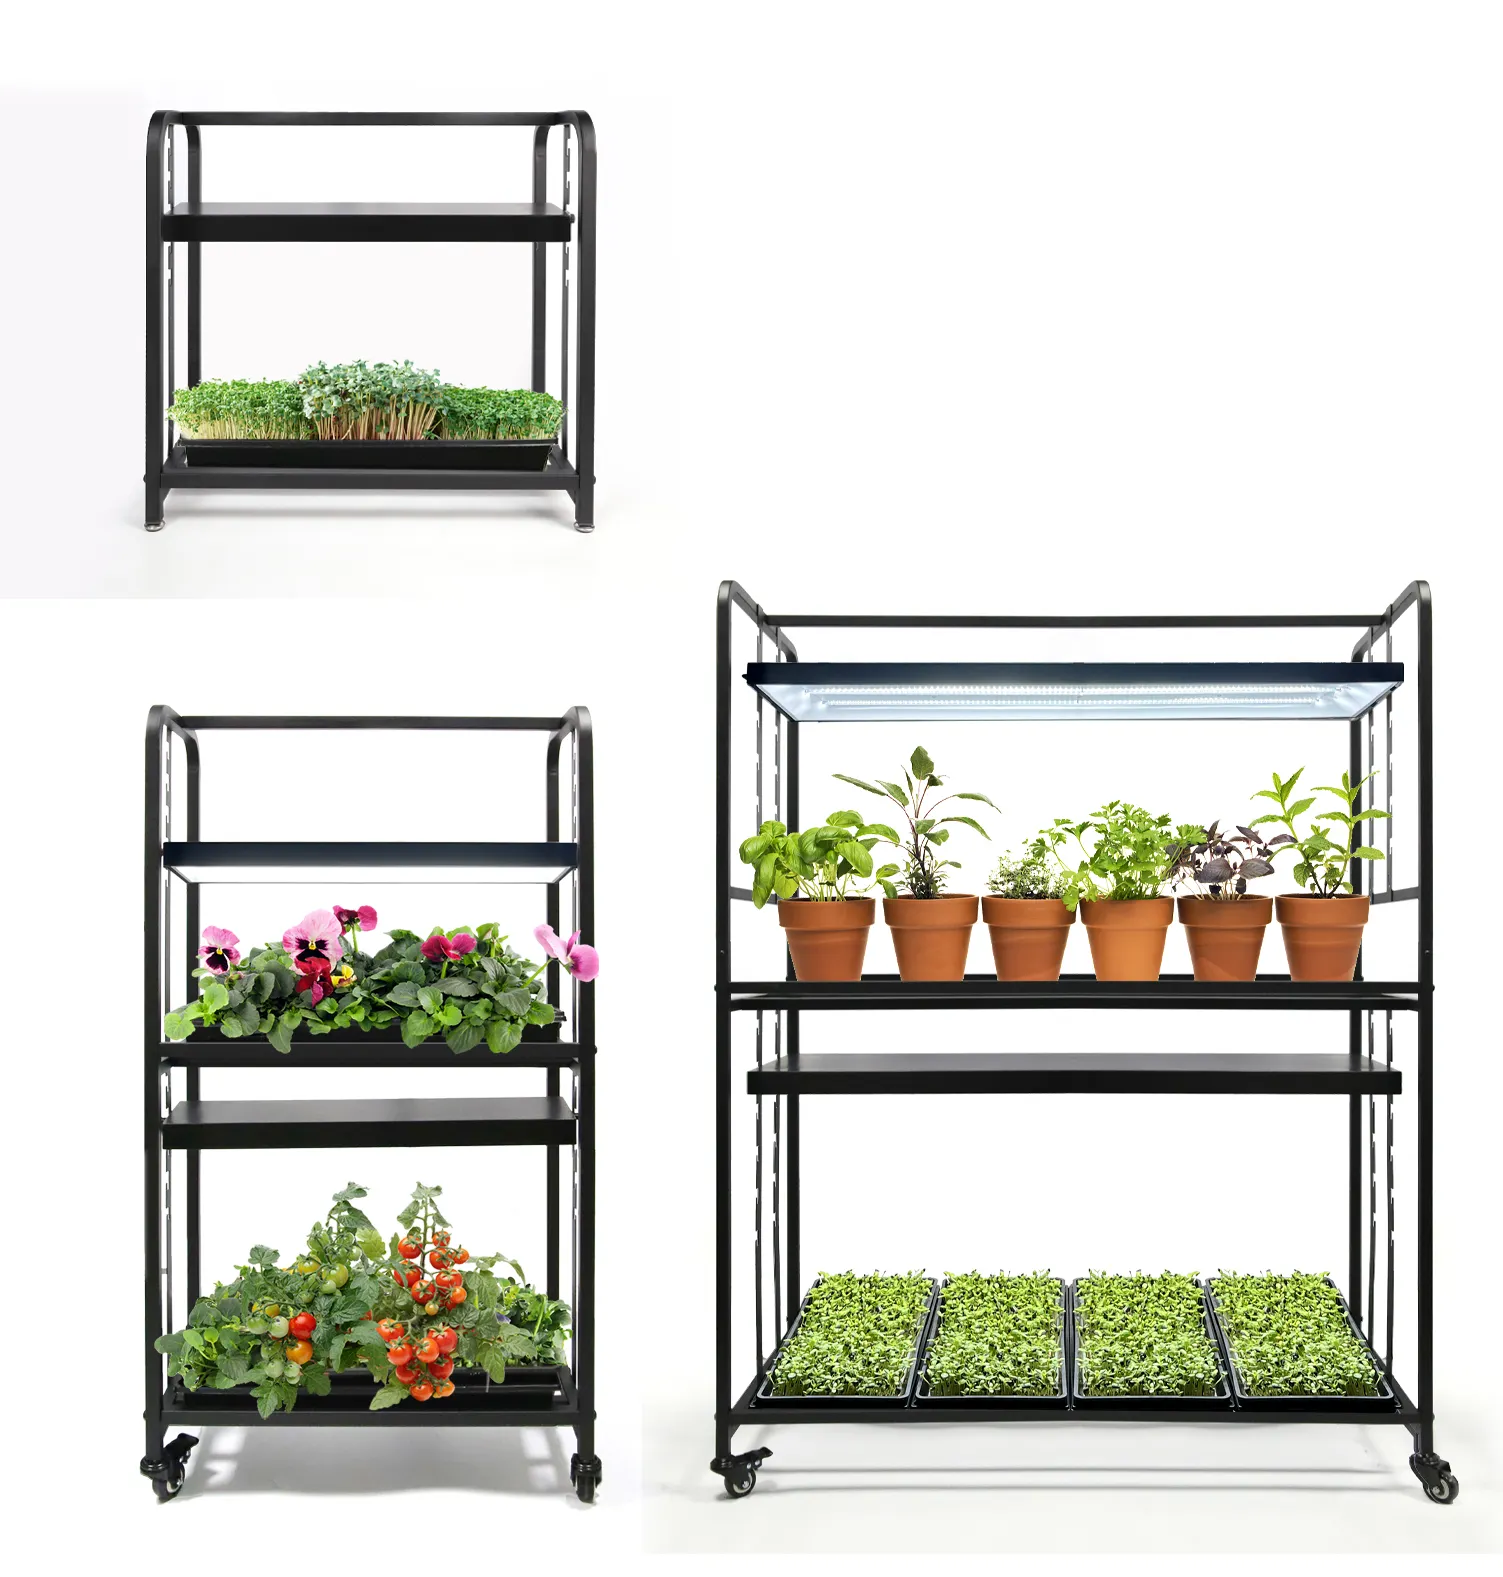 3つのオプションの屋内ガーデン植物スタンドキッチンガーデンシェルフ、種子の開始、多肉植物、ハーブ用のLEDフルスペクトルライト付き